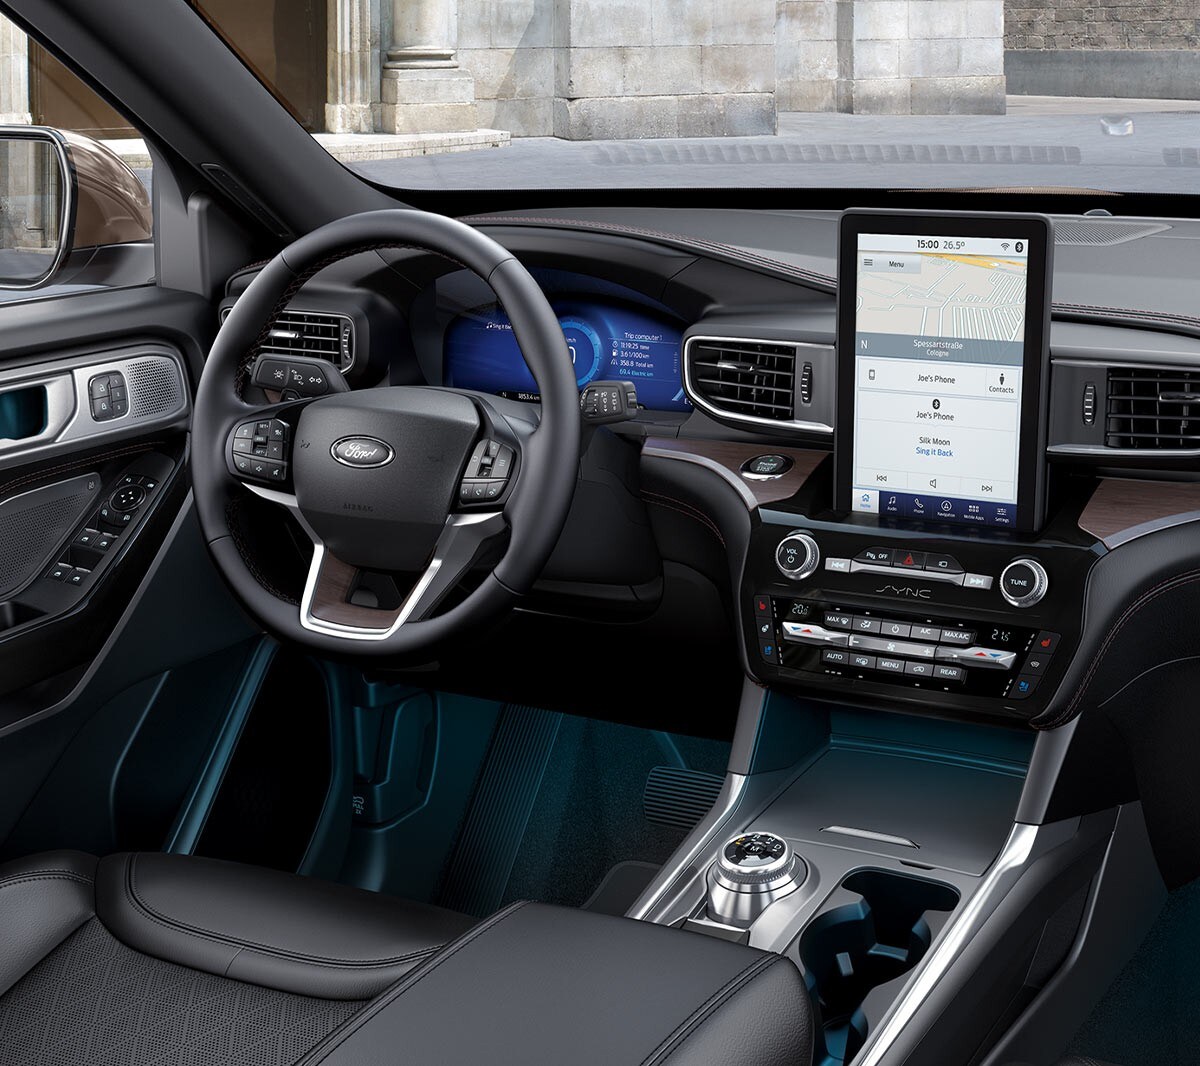 Ford Mondeo indvendige kabine set fra bagsædet med en person, der sidder i førersædet og kontrollerer bakkamera